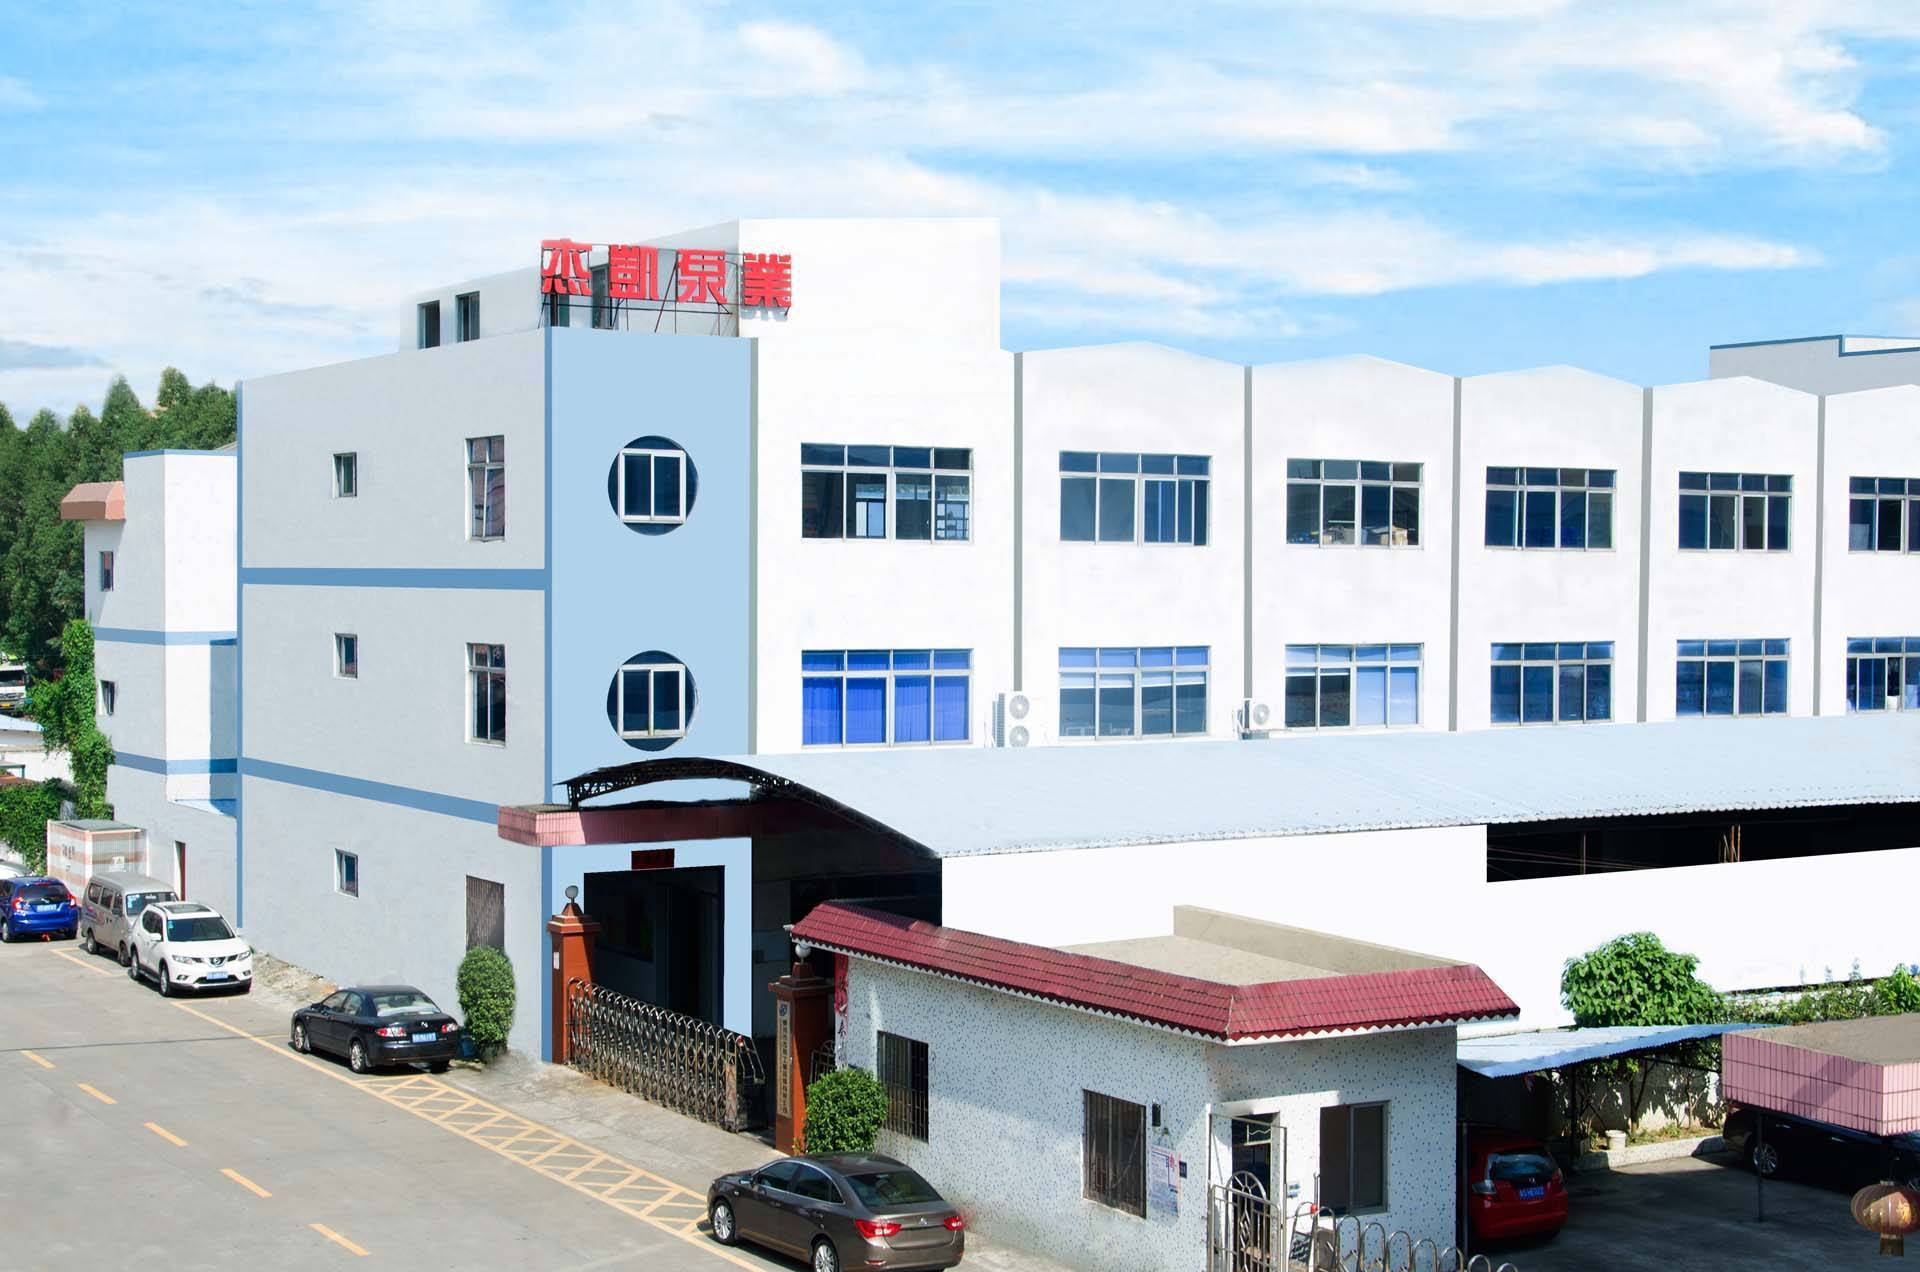     Dongguan Jiekai Industrial Equipment Co., Ltd